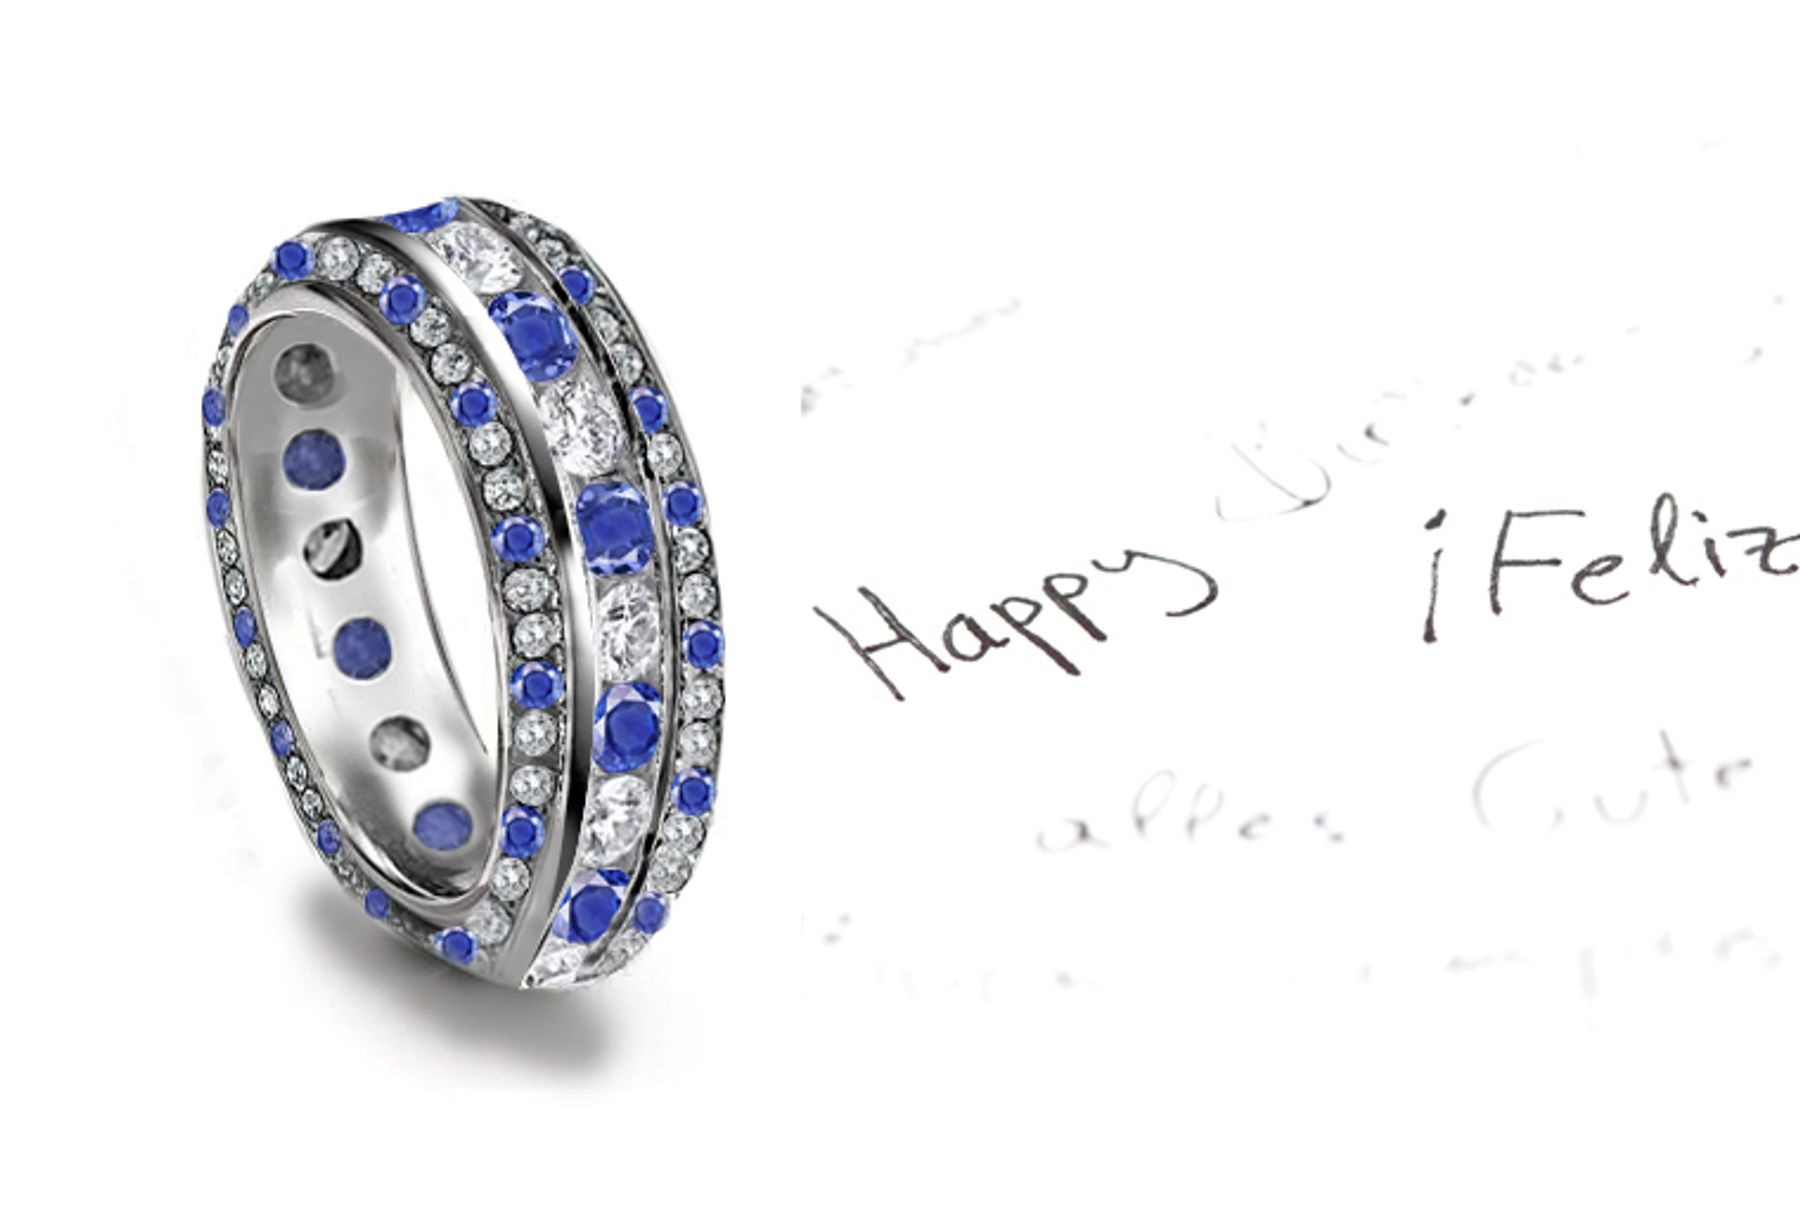 Impeccable: Large Sapphire & Brilliant Diamond Anniversary Multi-Stone Ring in Stock in Gold